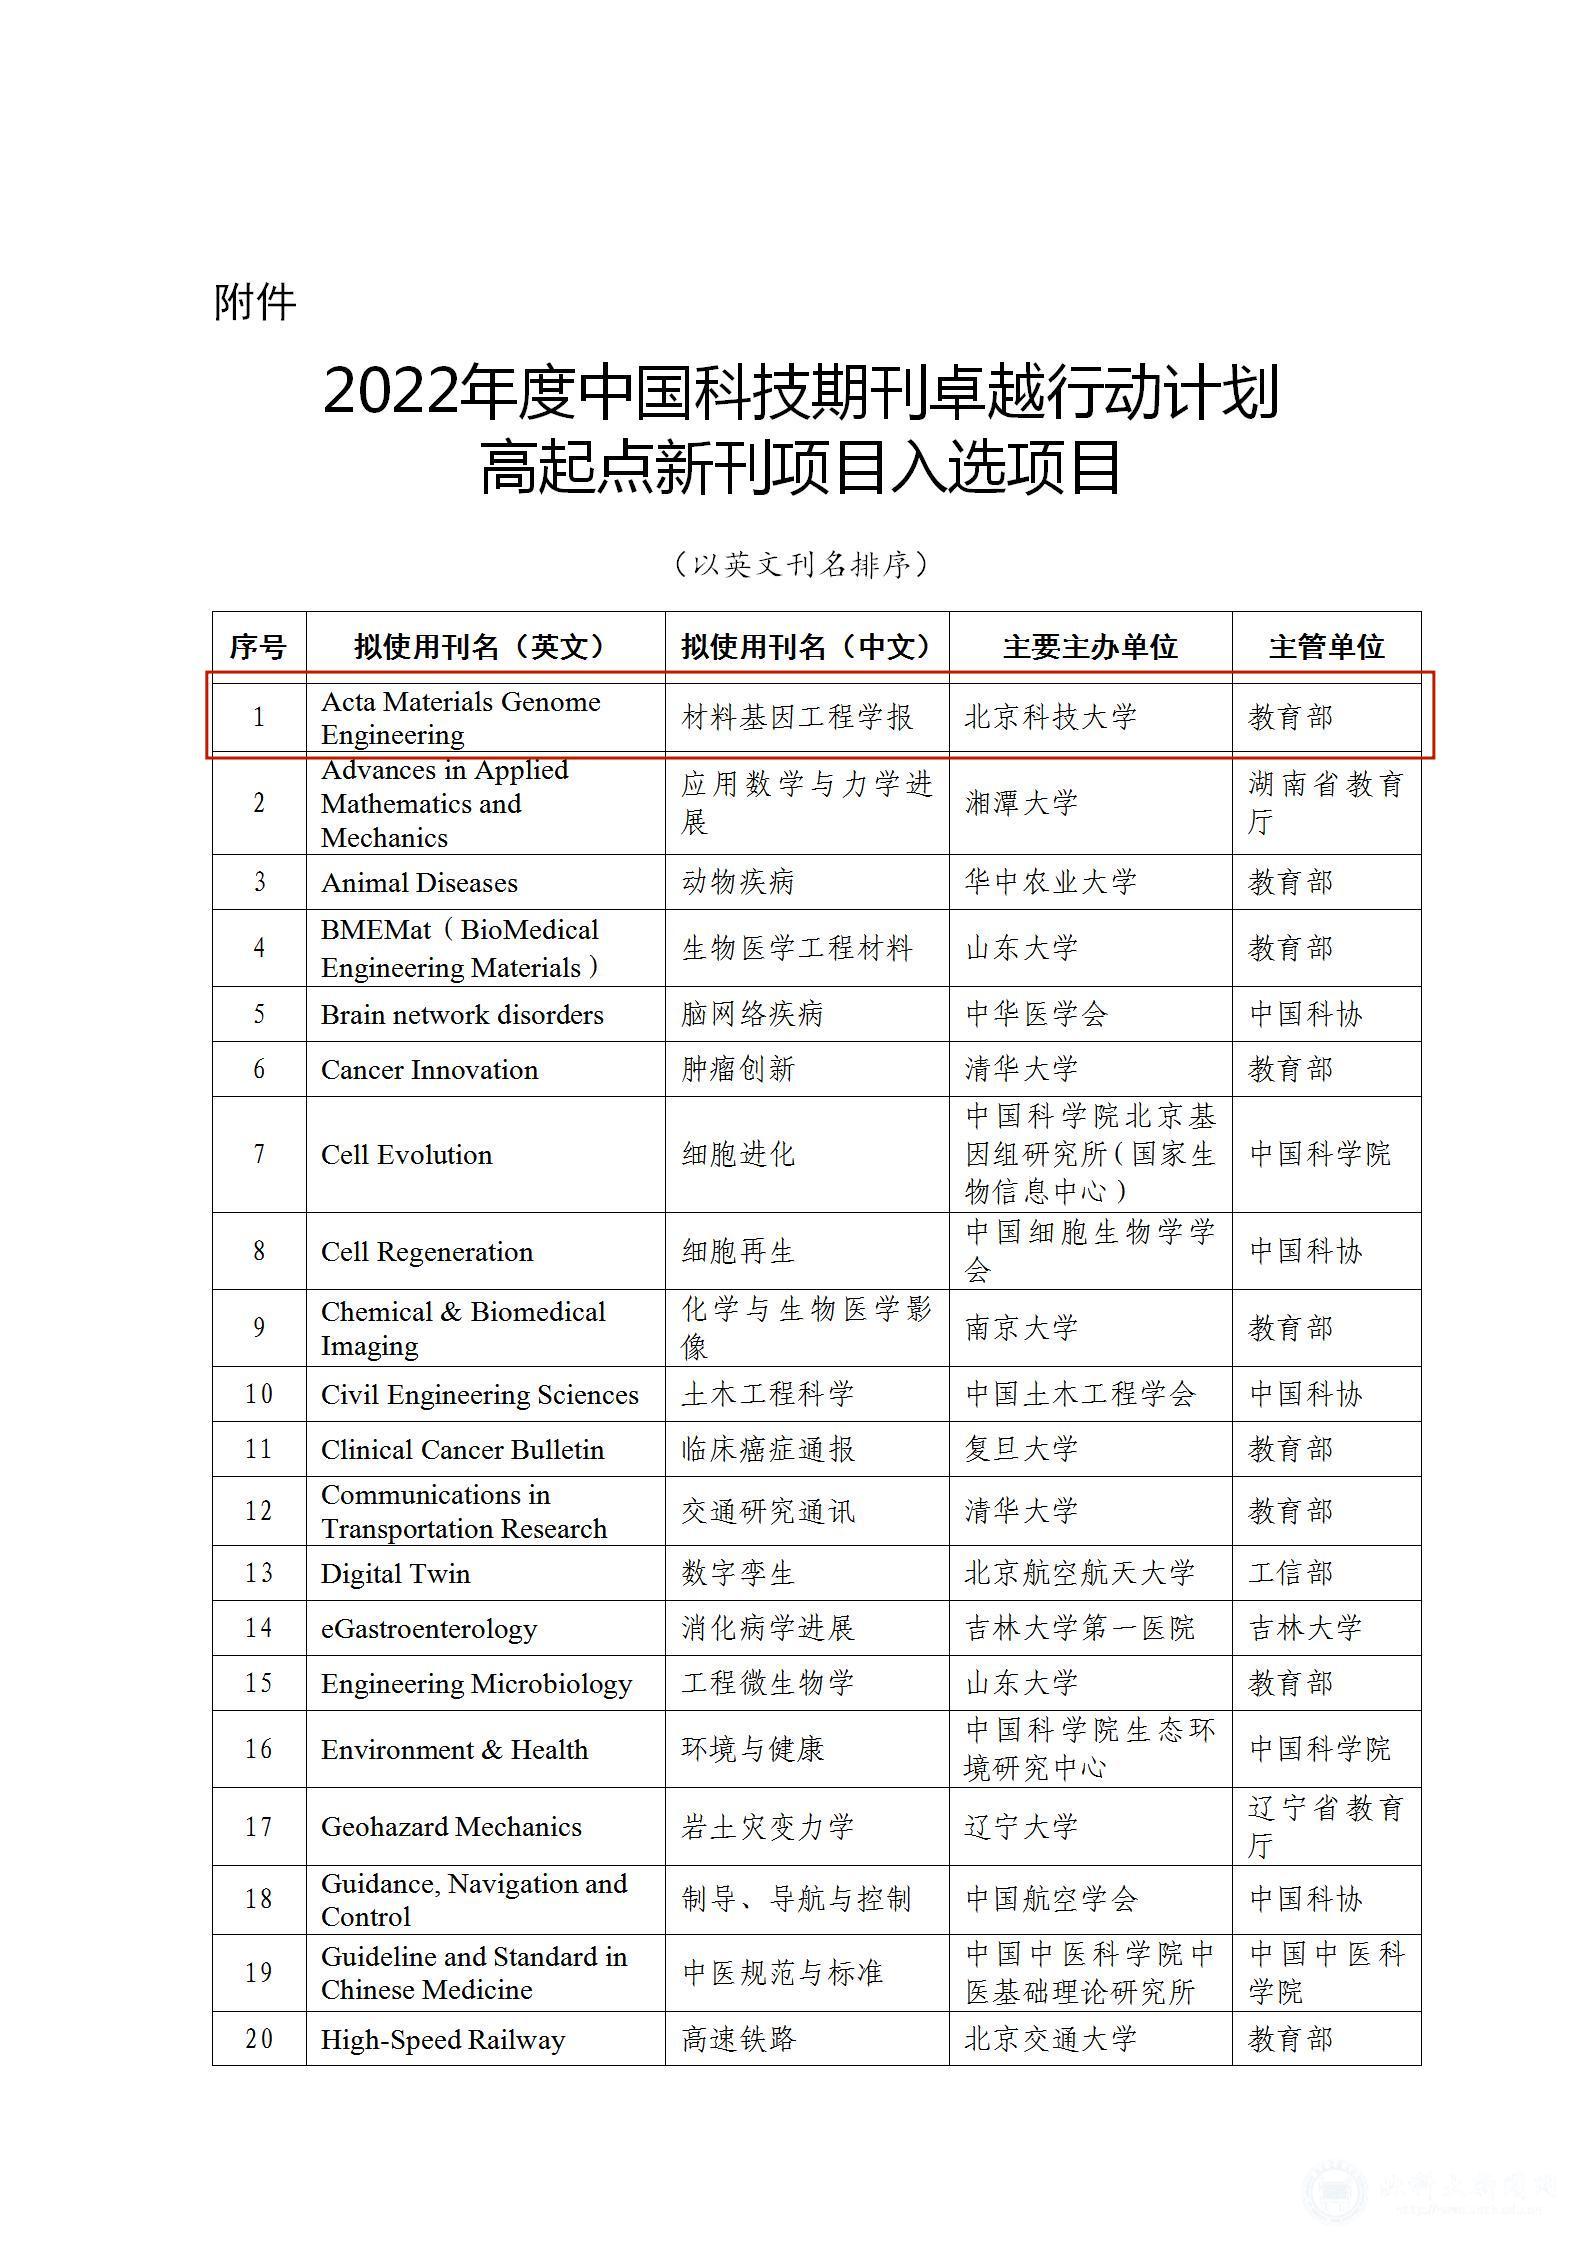 2022年度中国科技期刊卓越行动计划高起点新刊项目入选项目_01.jpg